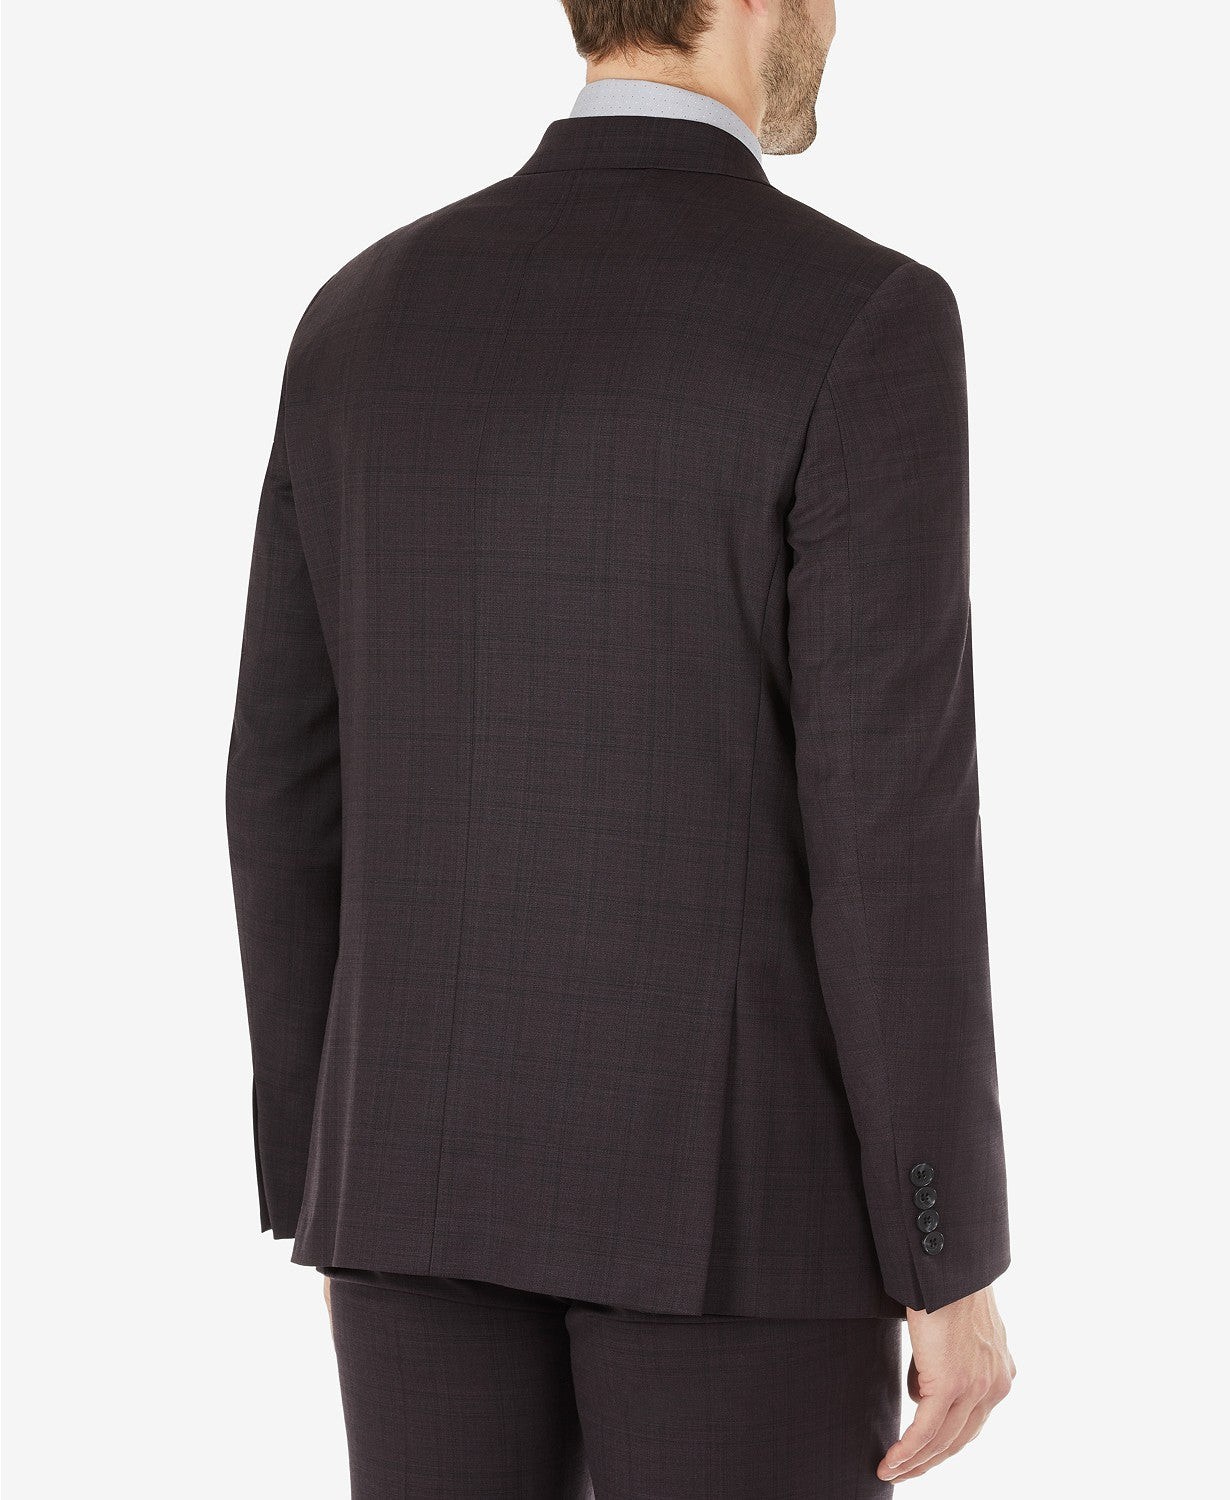 Calvin Klein Men's Skinny Fit Wool Suit Jacket Burgundy 42L Eggplant Plaid